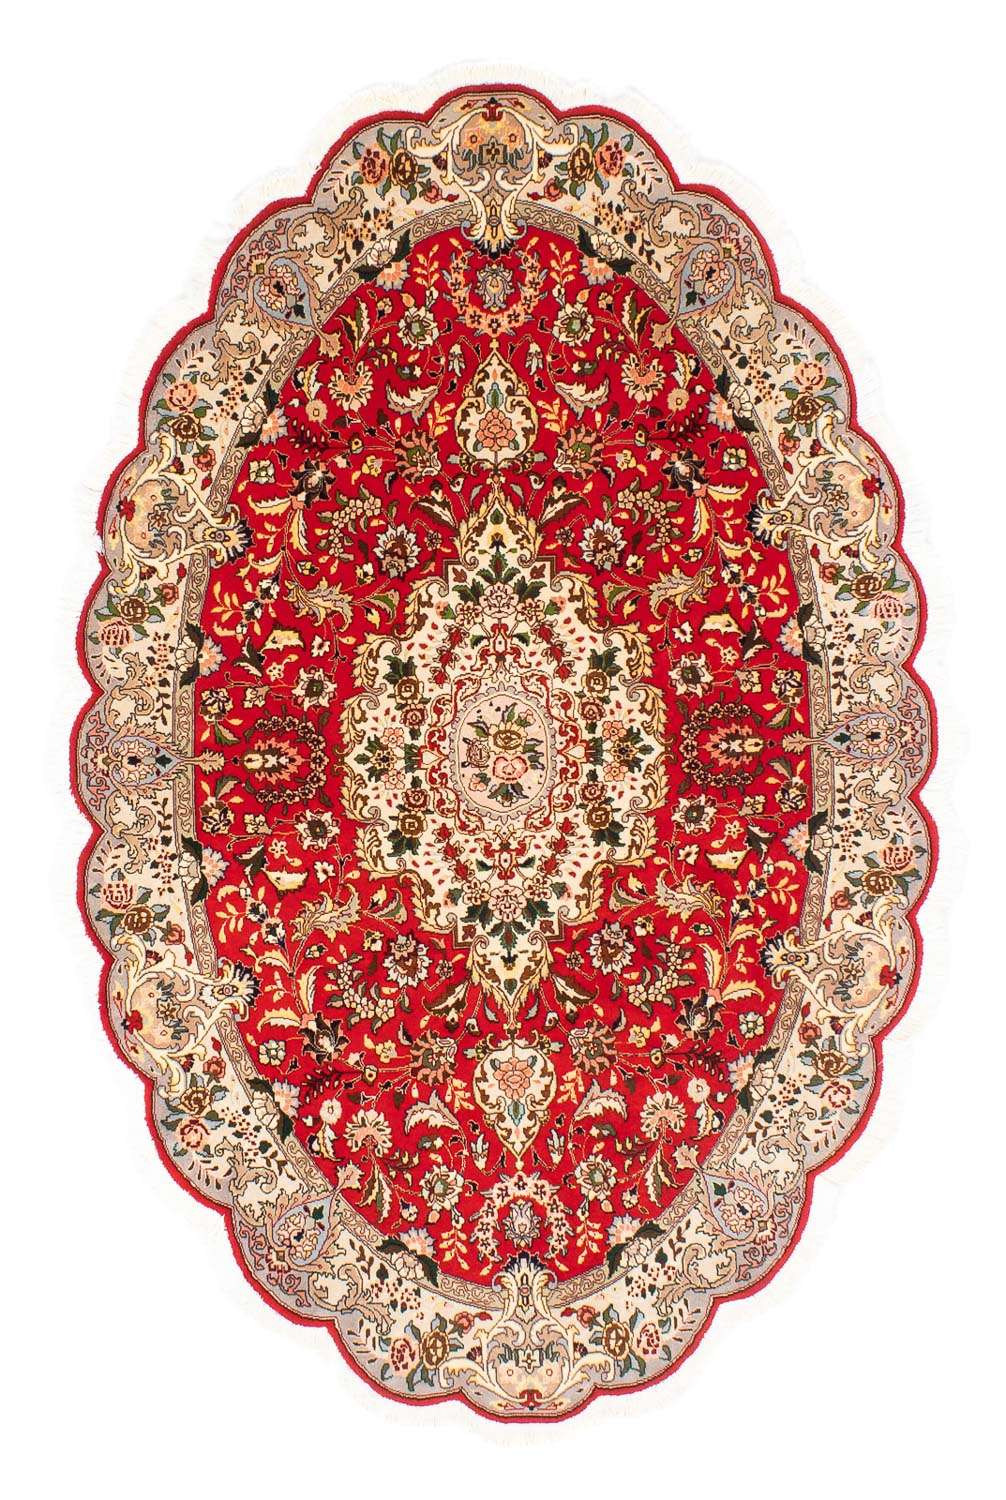 Tapete Persa - Tabriz - Royal oval  - 200 x 130 cm - vermelho